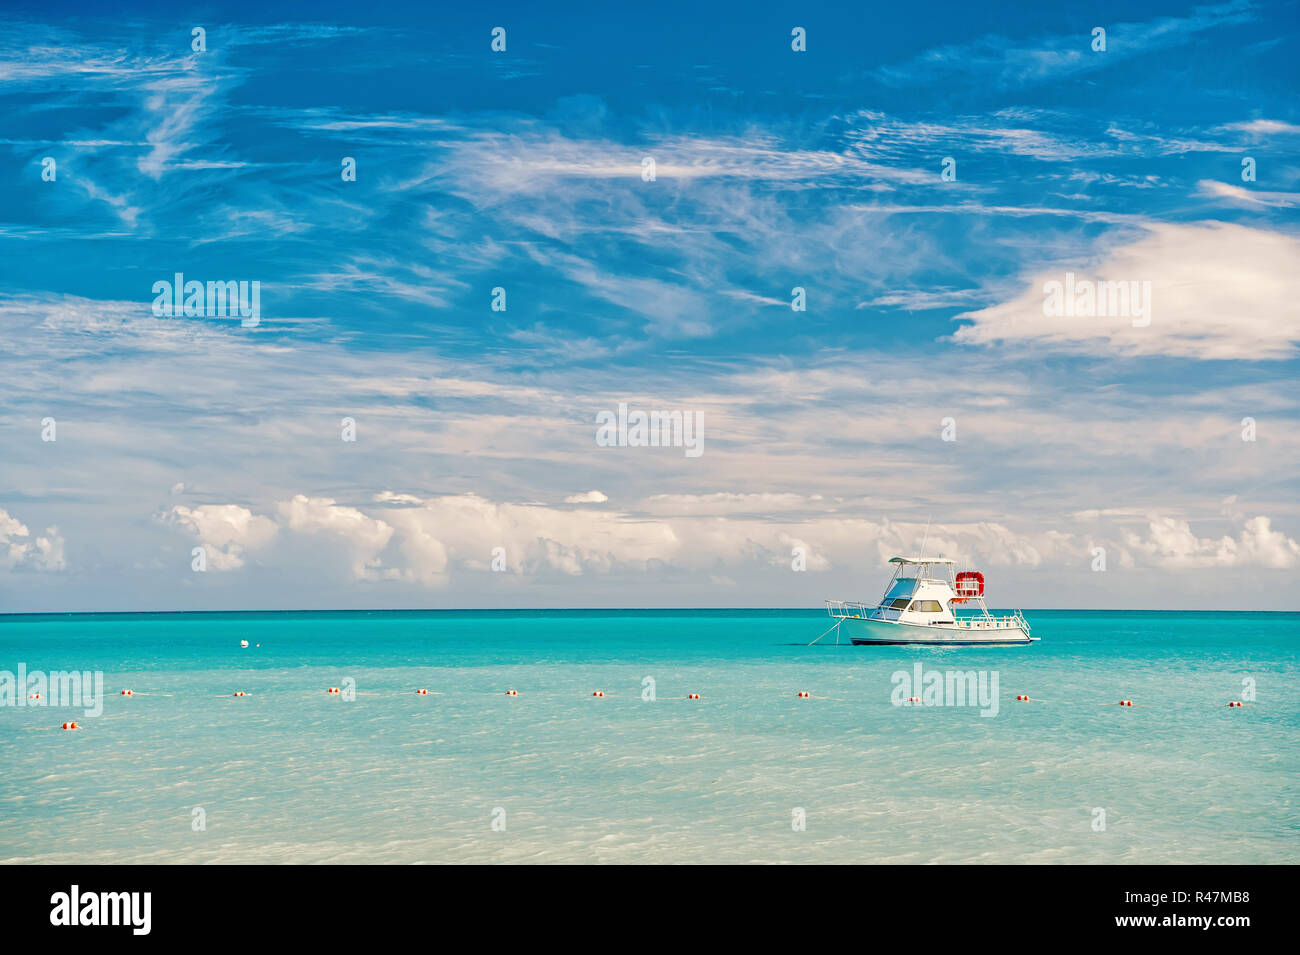 Barca alla spiaggia di Marina di Antigua St. Johns con la barca in acqua blu e il cielo con le nuvole di piccole dimensioni Foto Stock